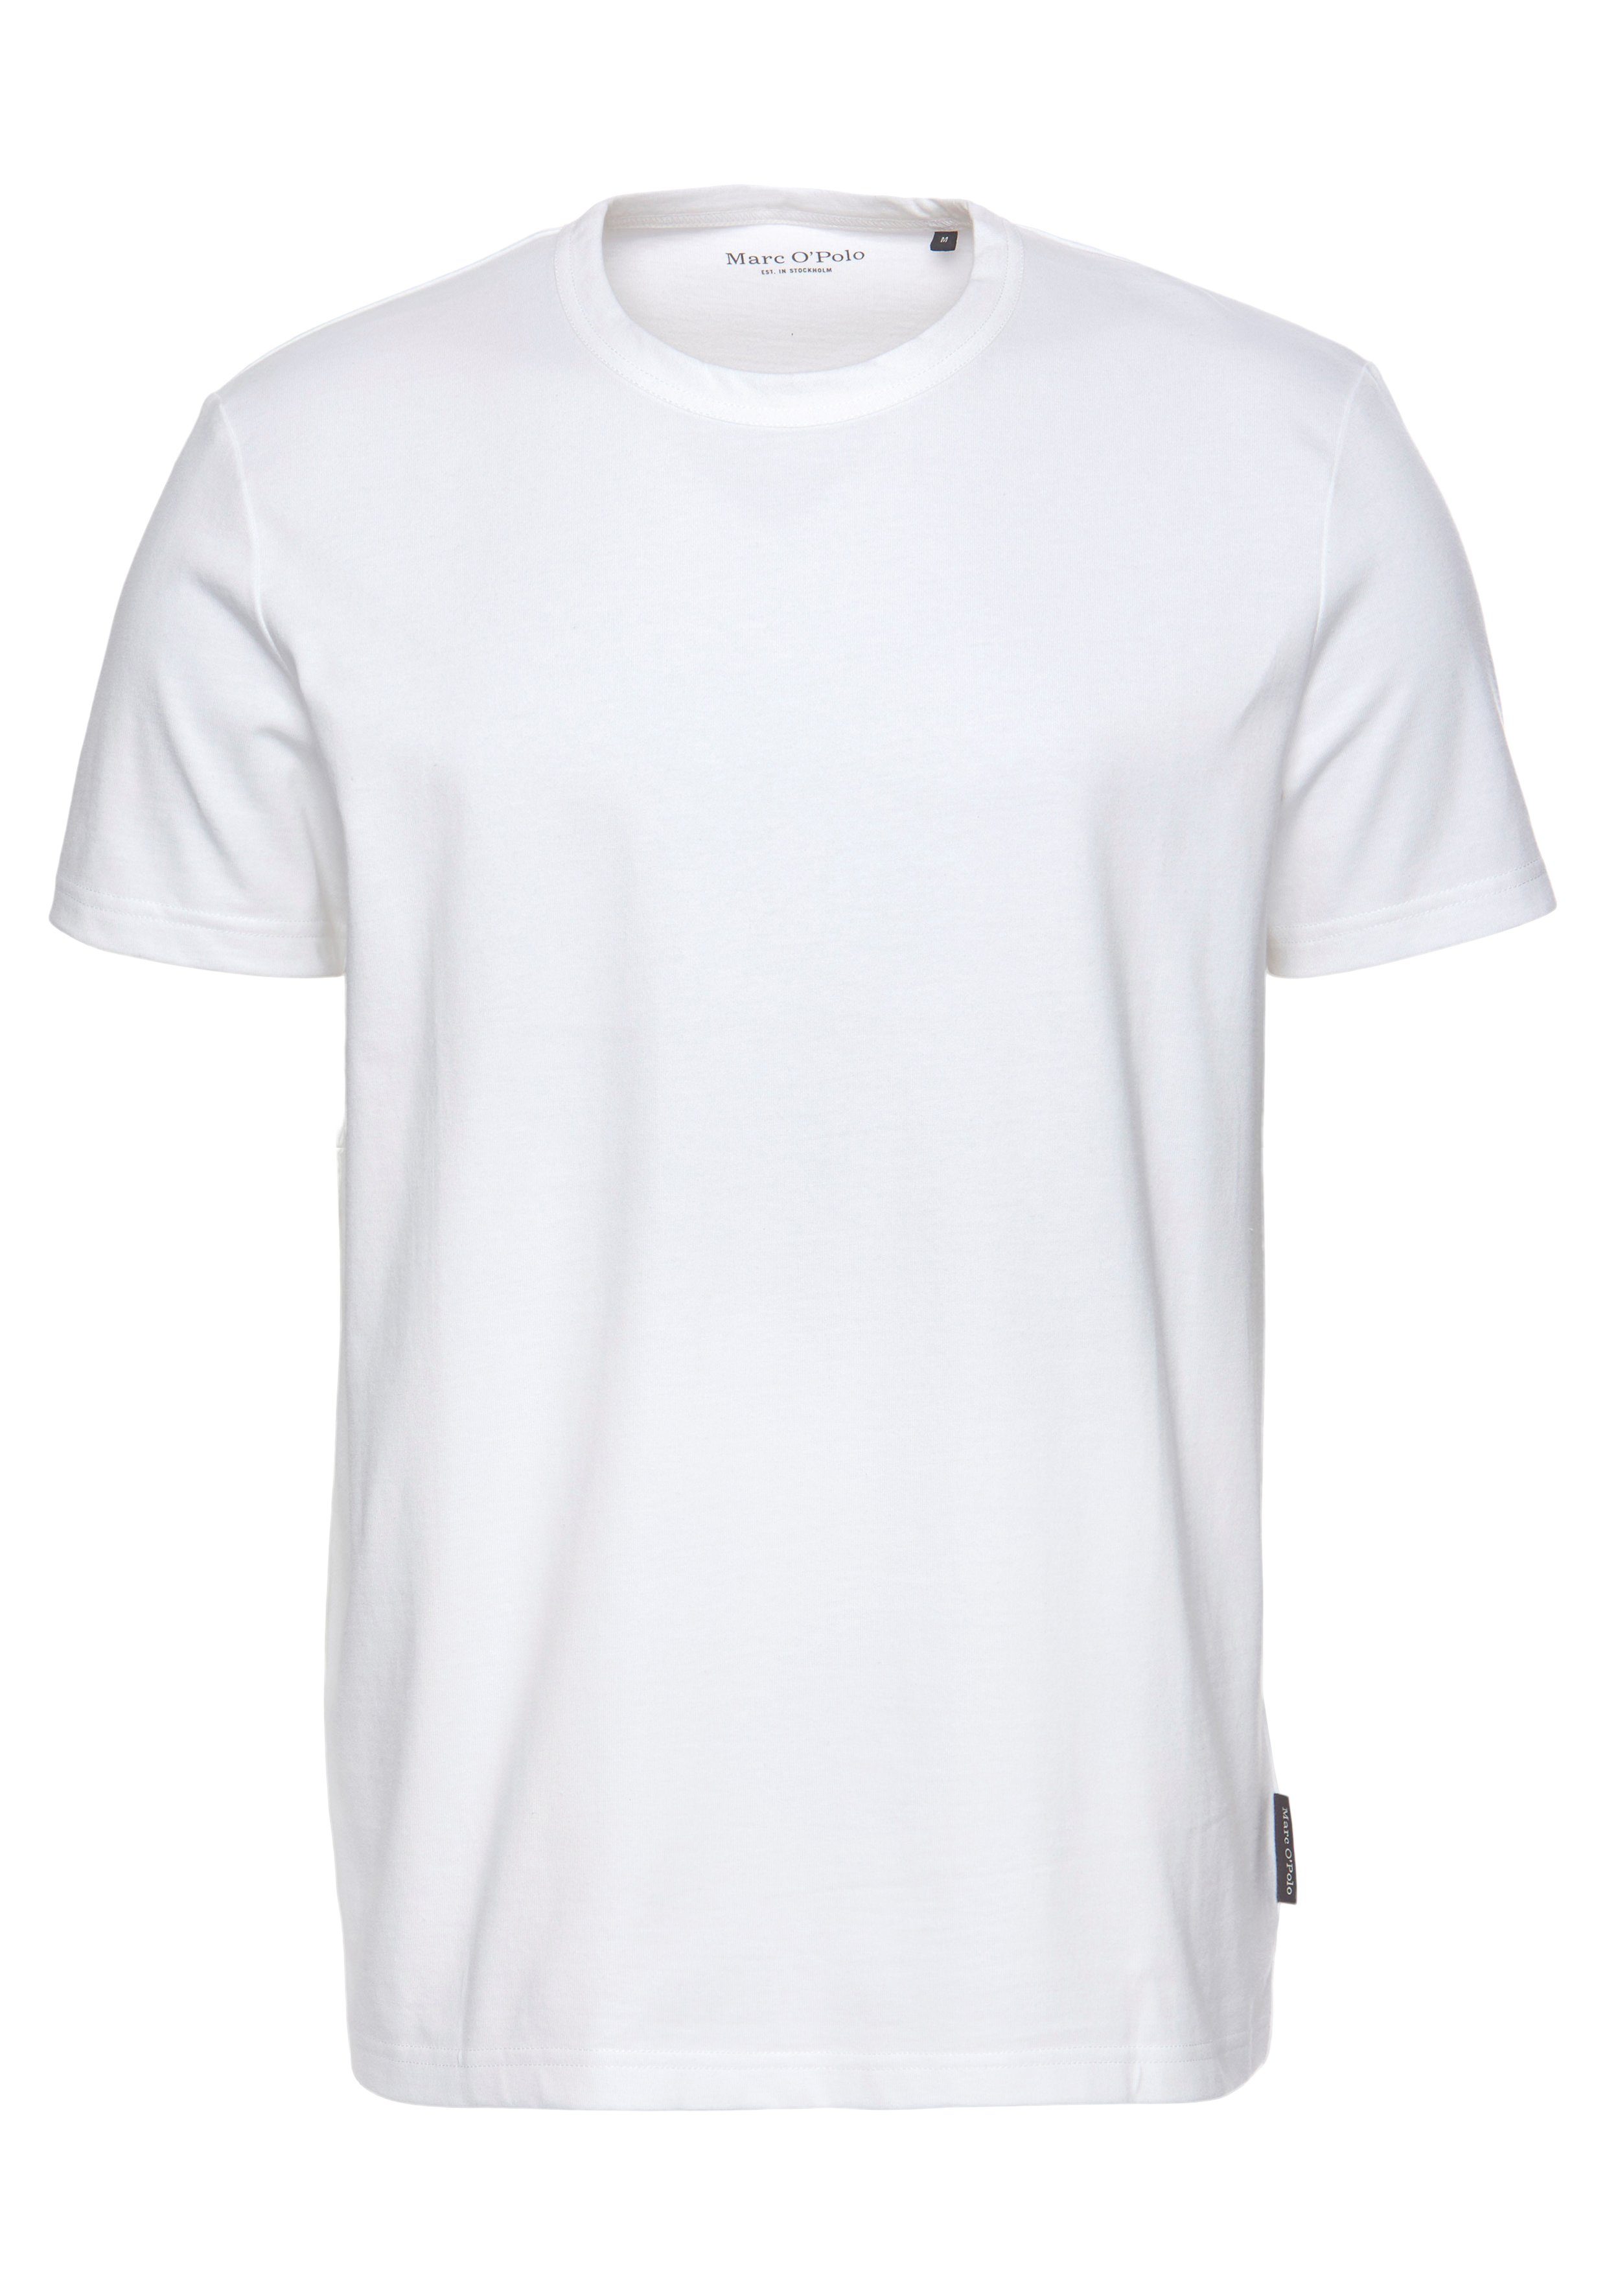 white Regular Baumwolle aus Rundhals-T-Shirt O'Polo T-Shirt Marc hochwertiger